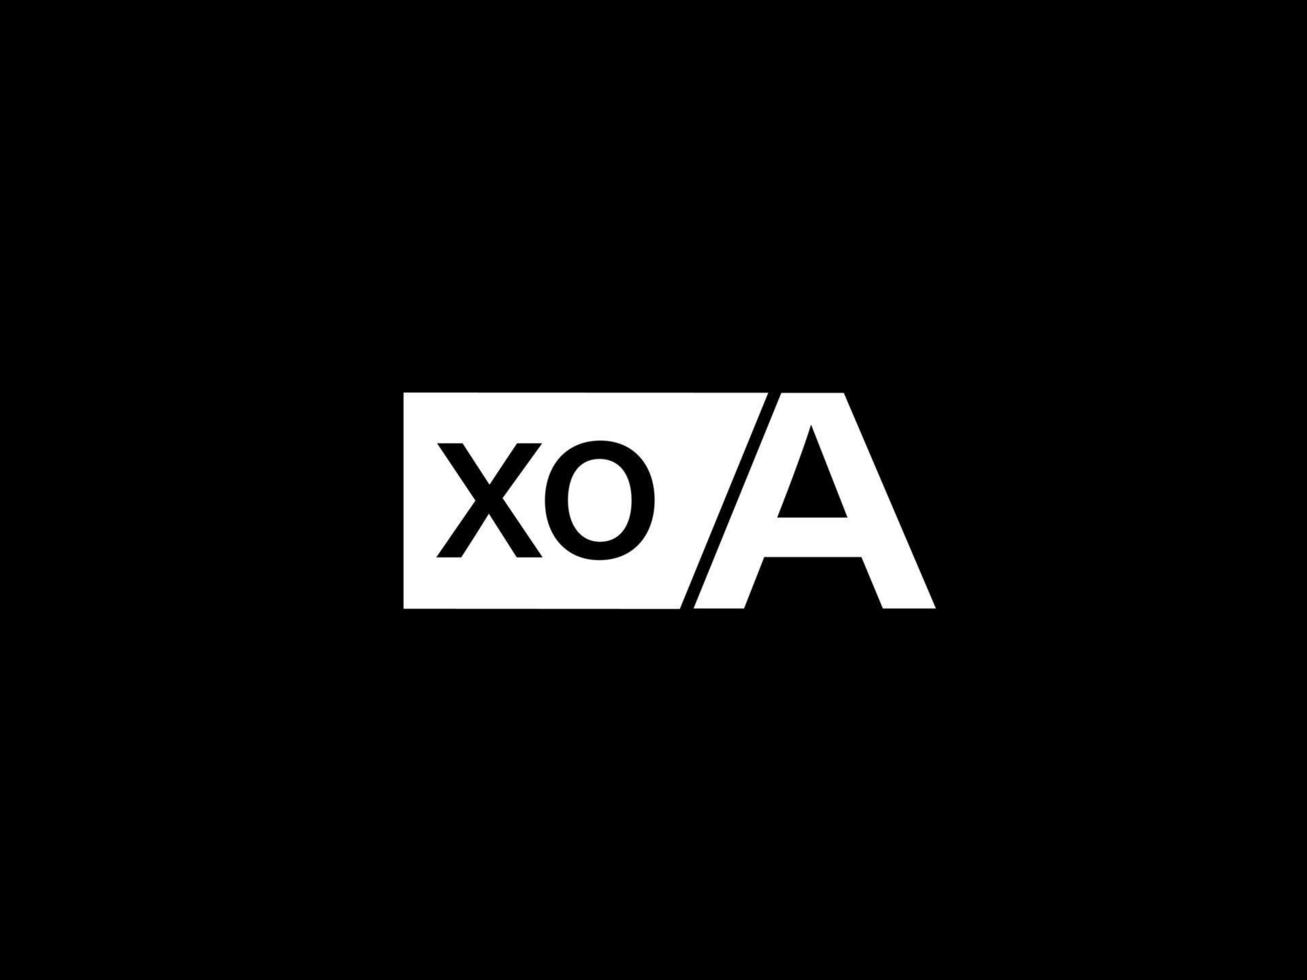 xoa logotyp och grafik design vektor konst, ikoner isolerat på svart bakgrund